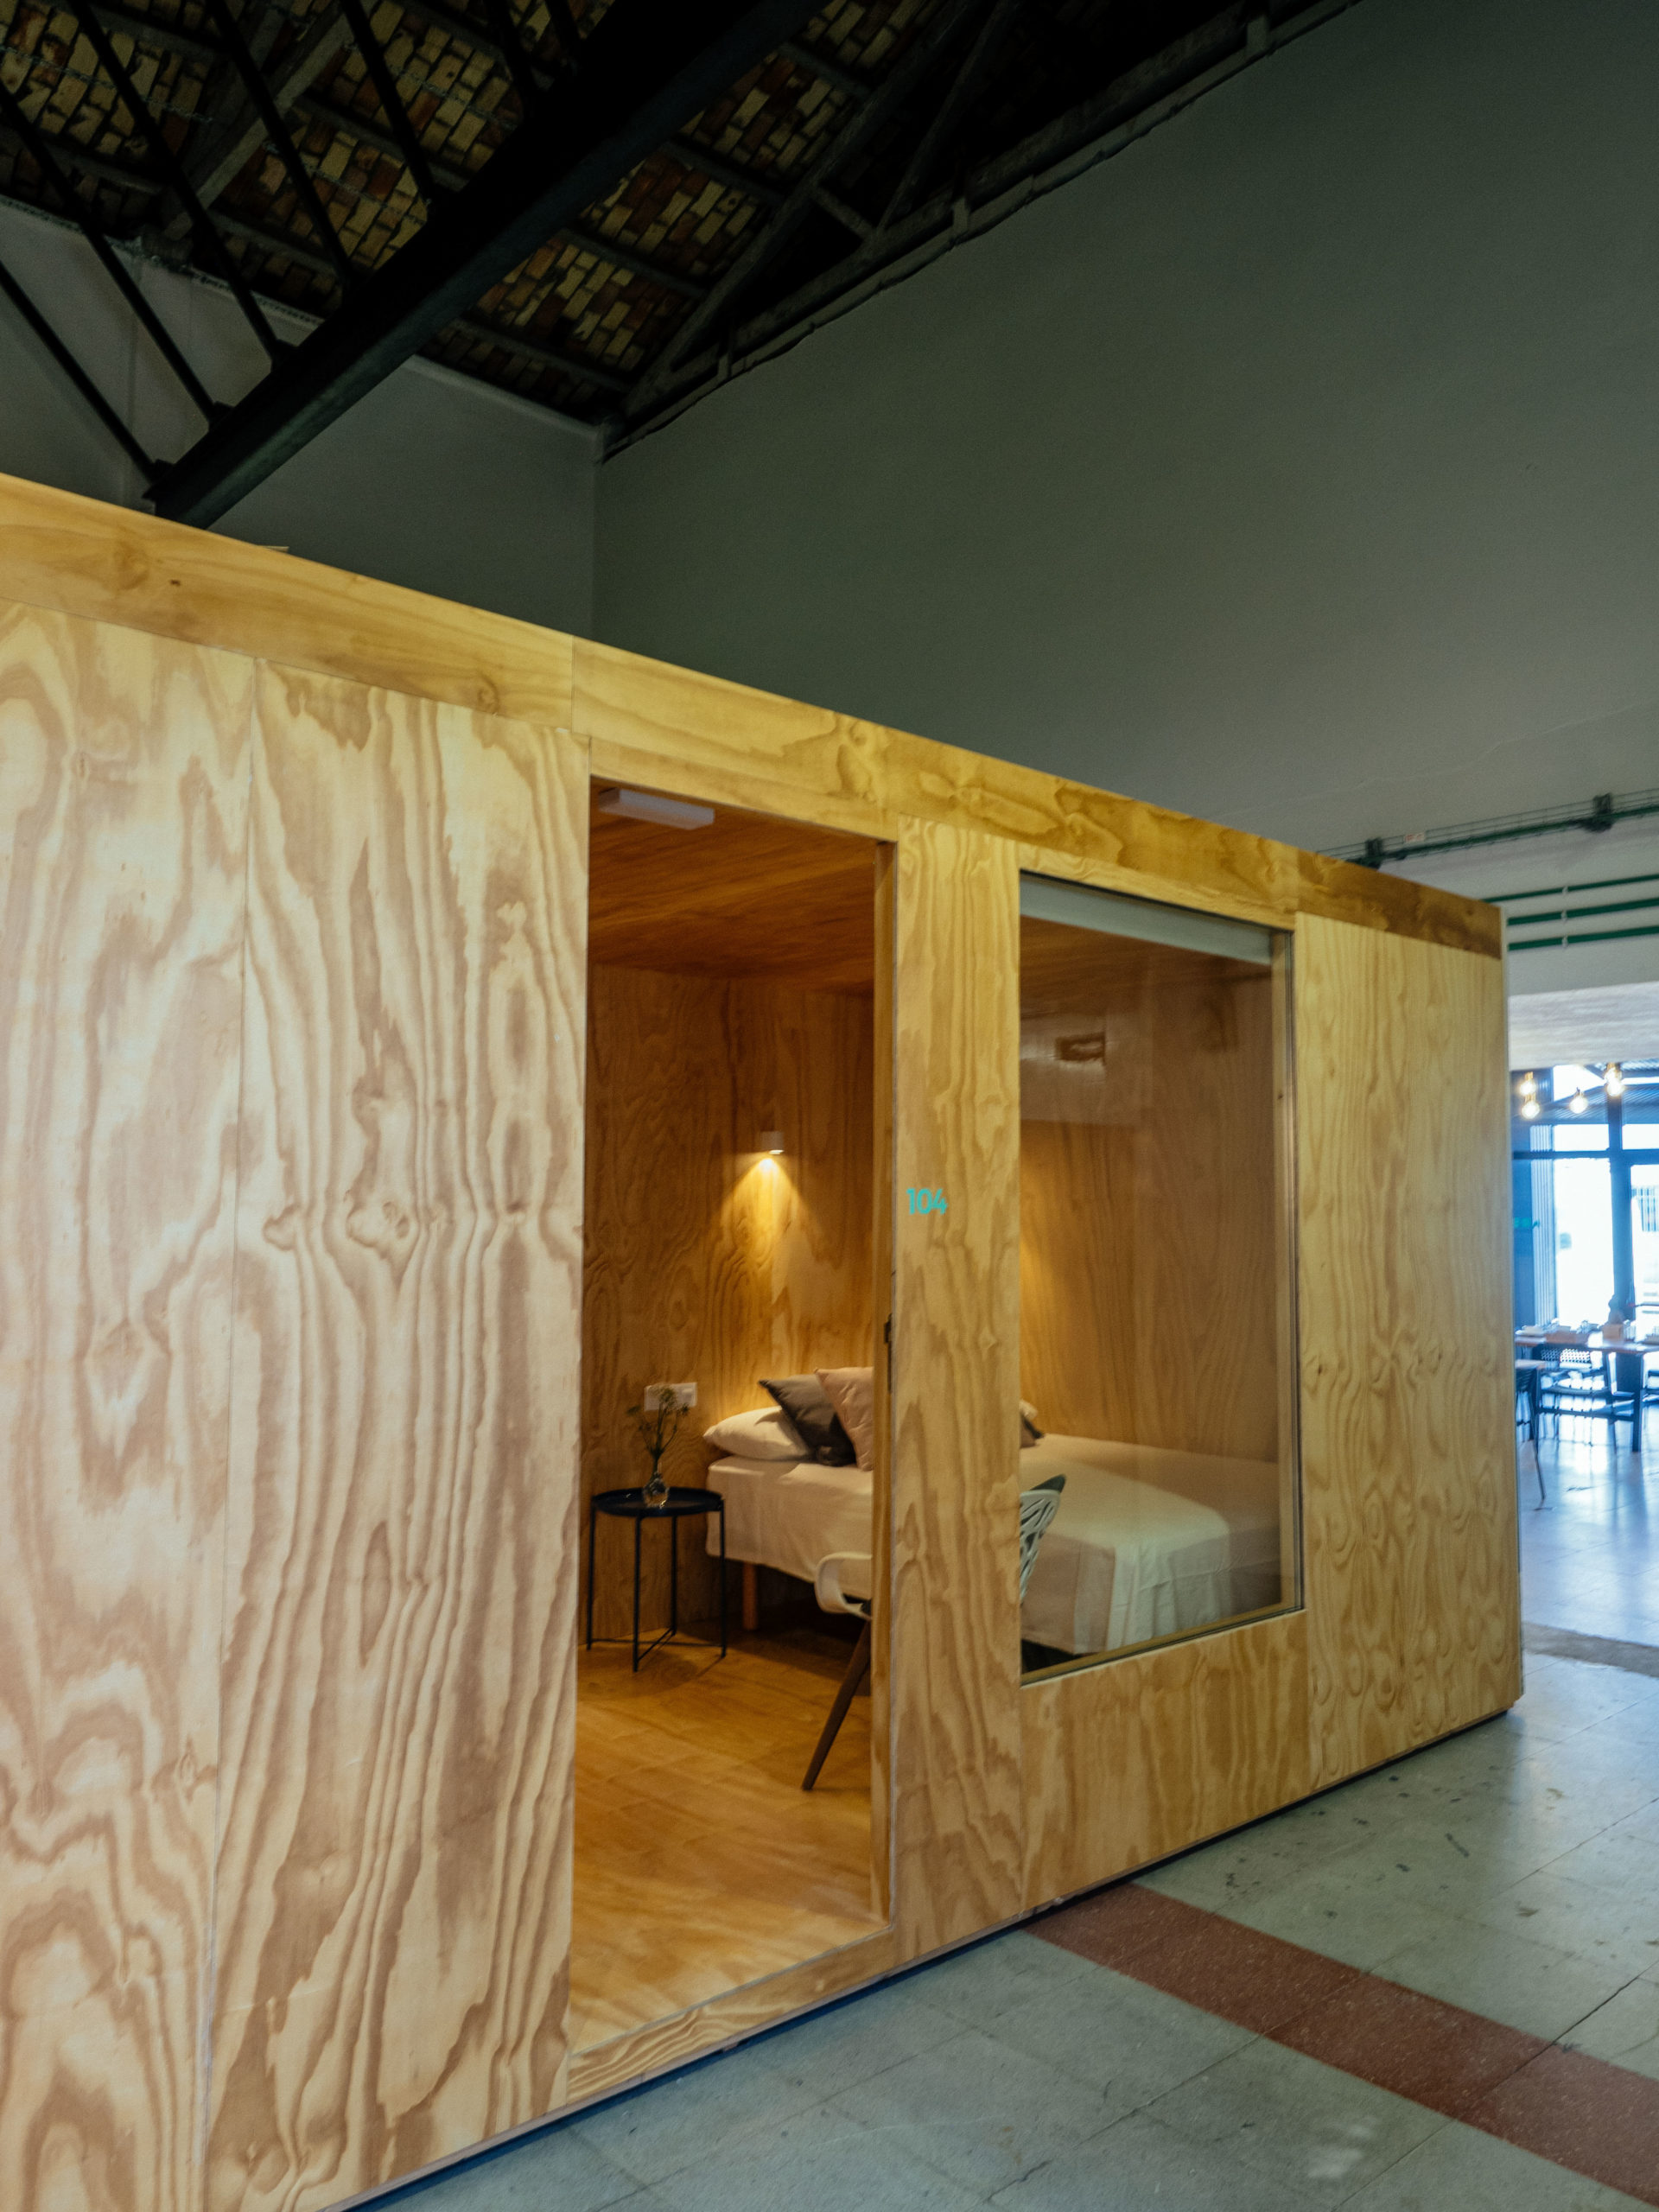 fotografía interior con habitáculos con las habitaciones en entorno industrial